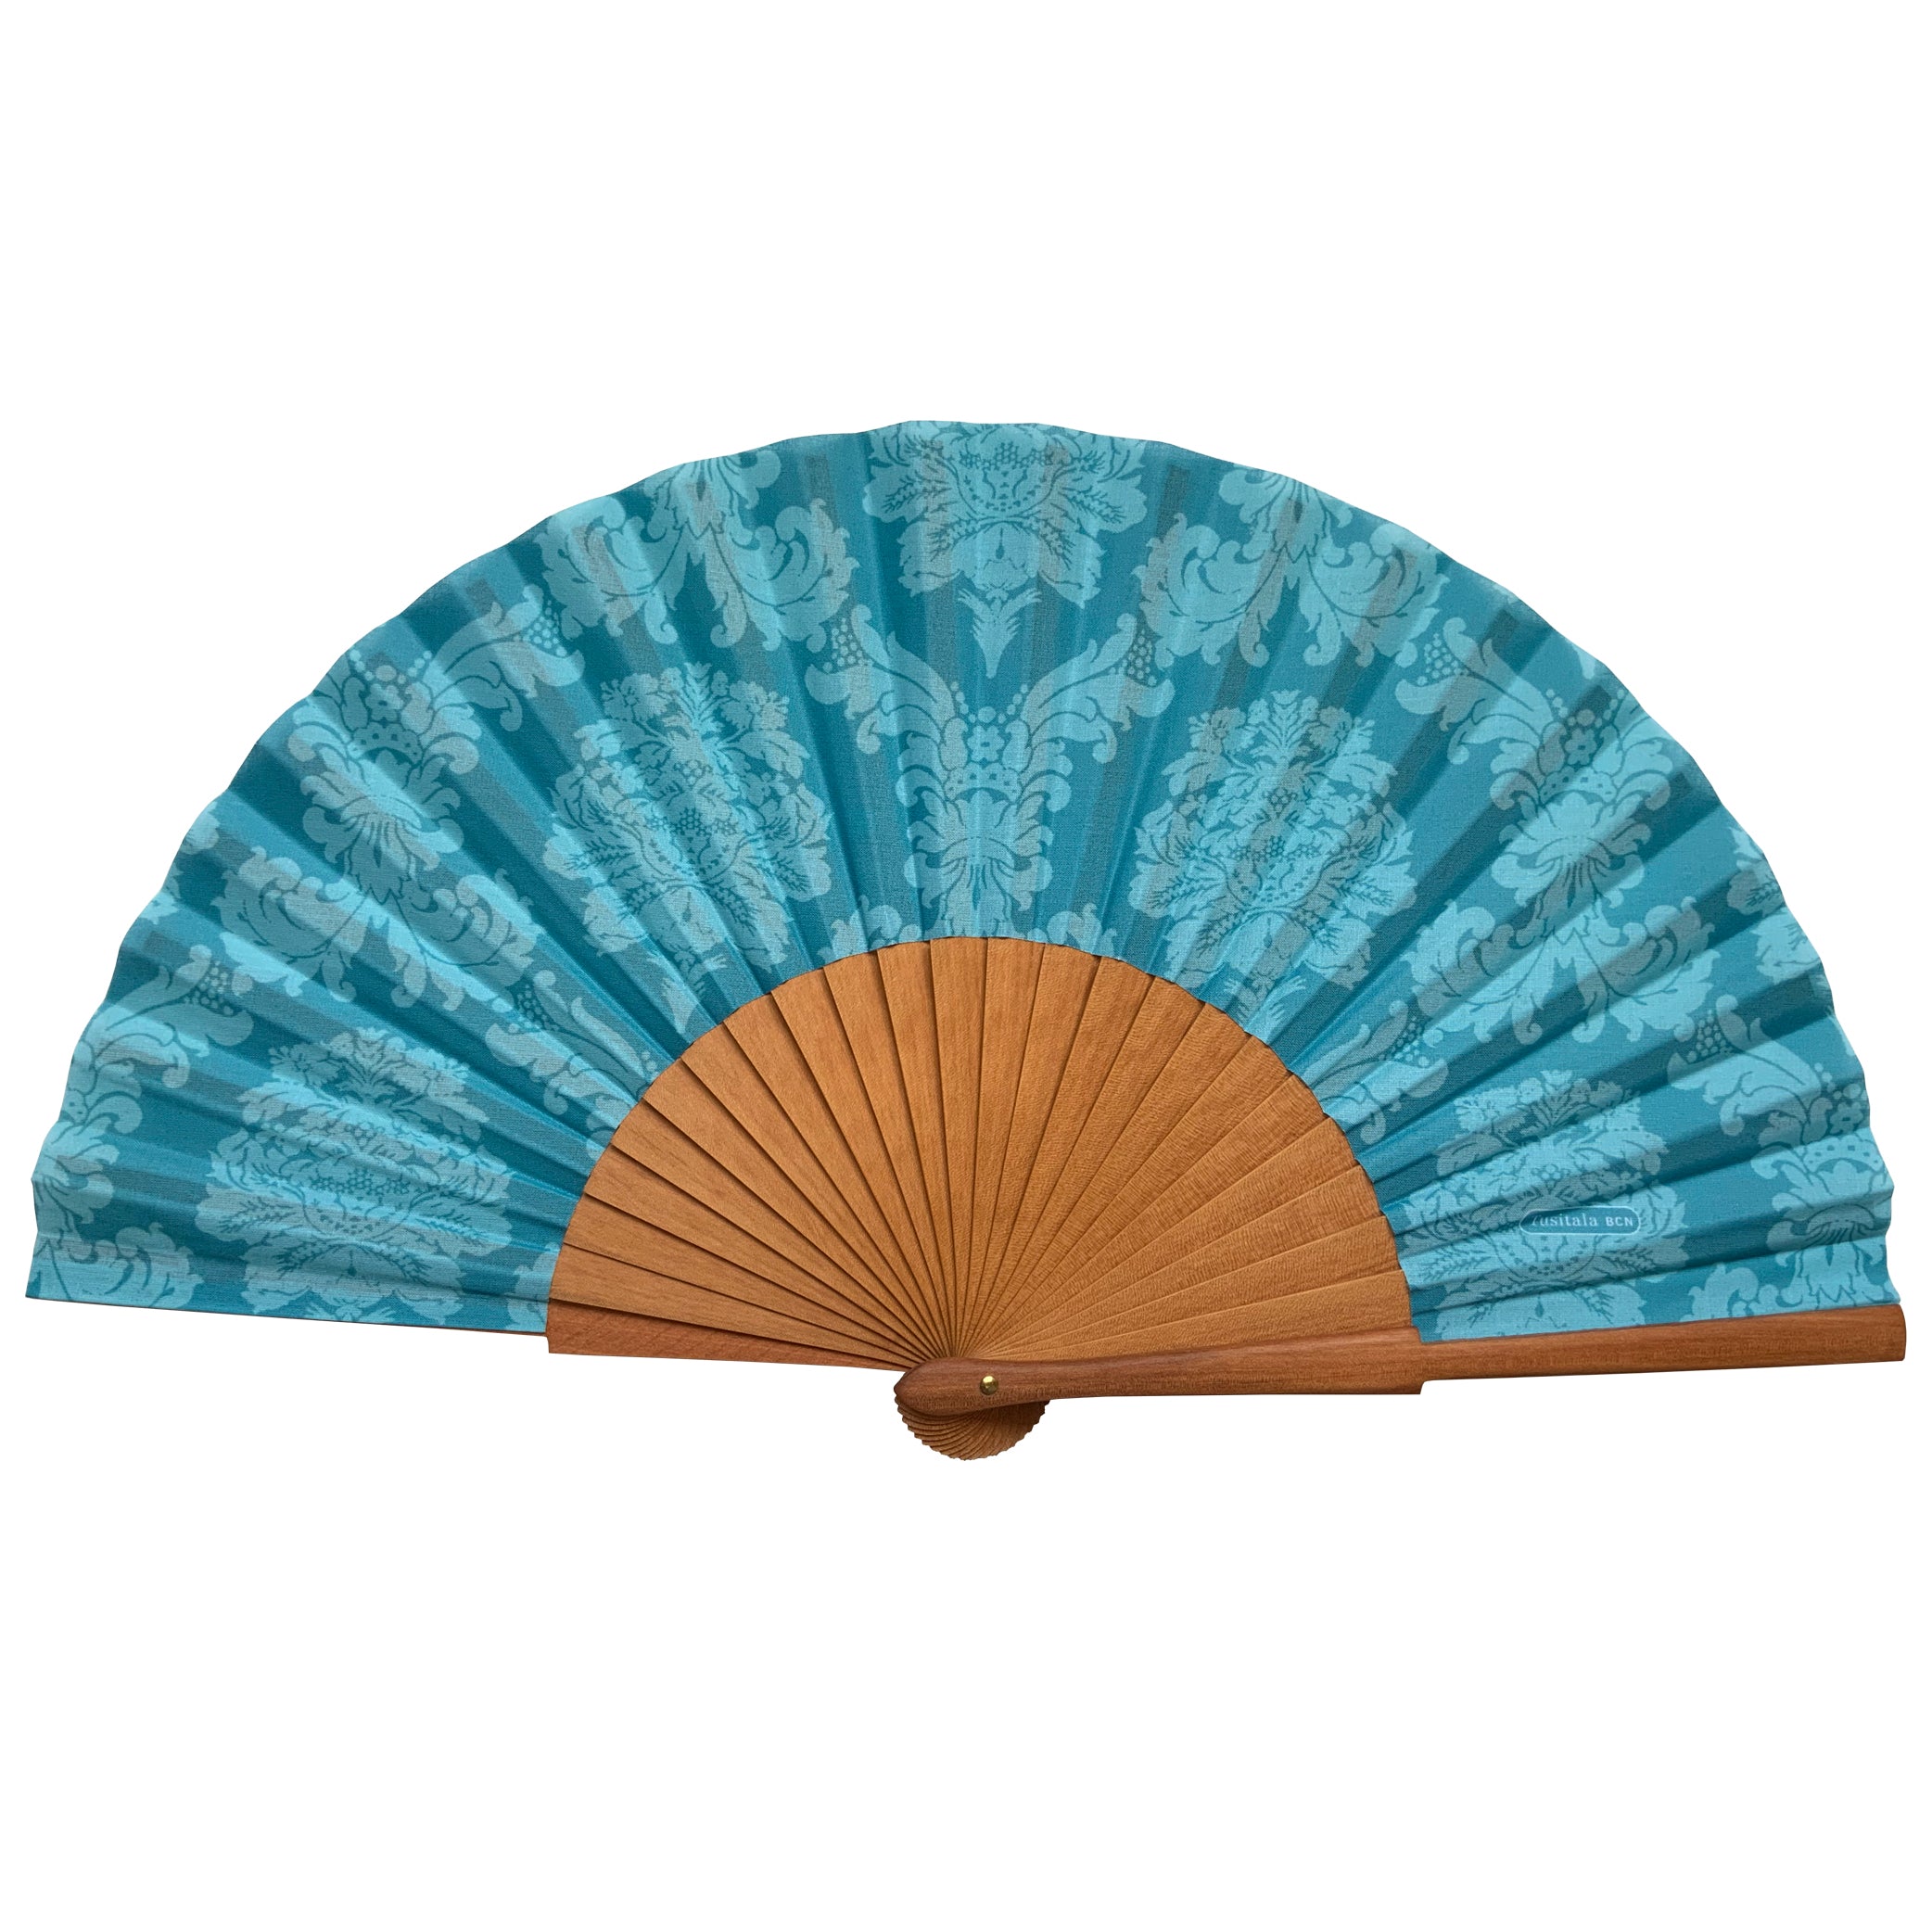 Blue damask hand fan